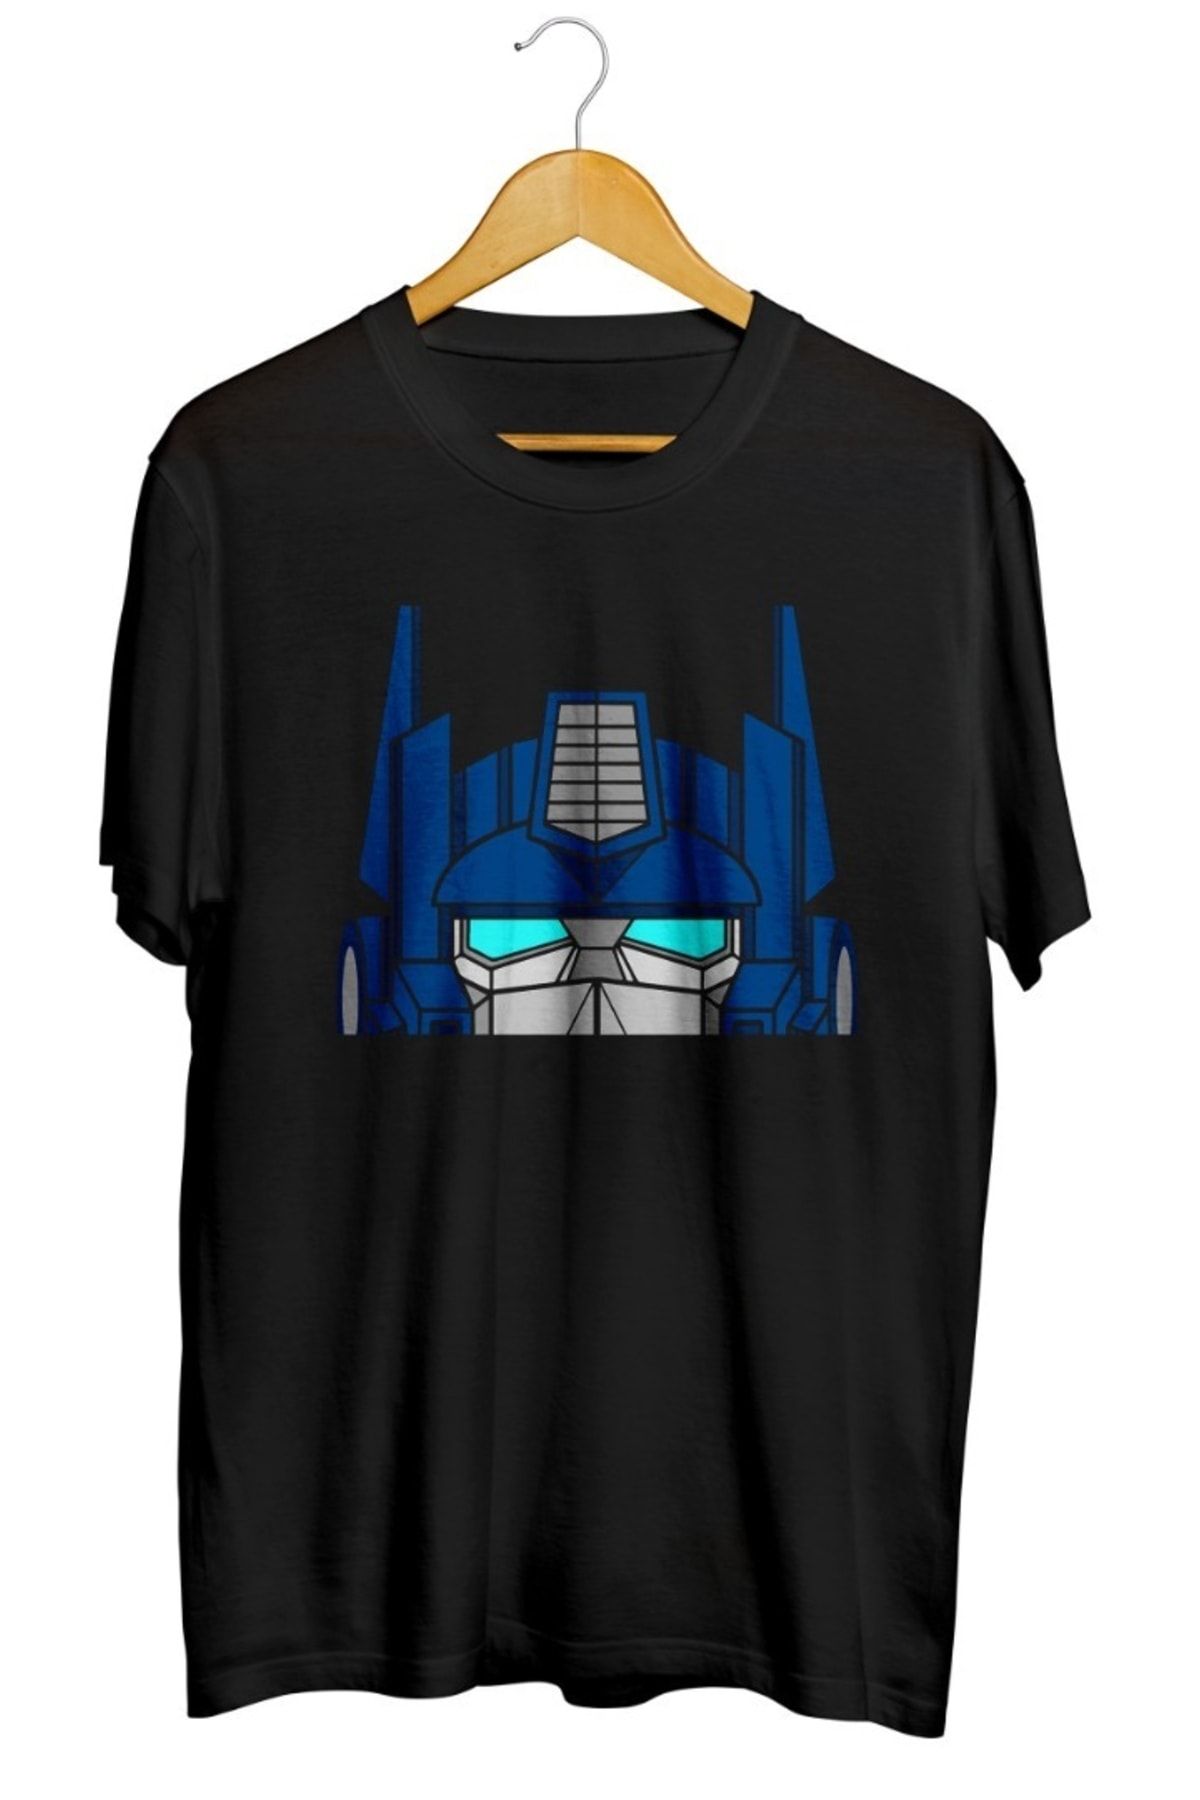 karikatürstore Optimus Prime Baskılı Unisex Tişört